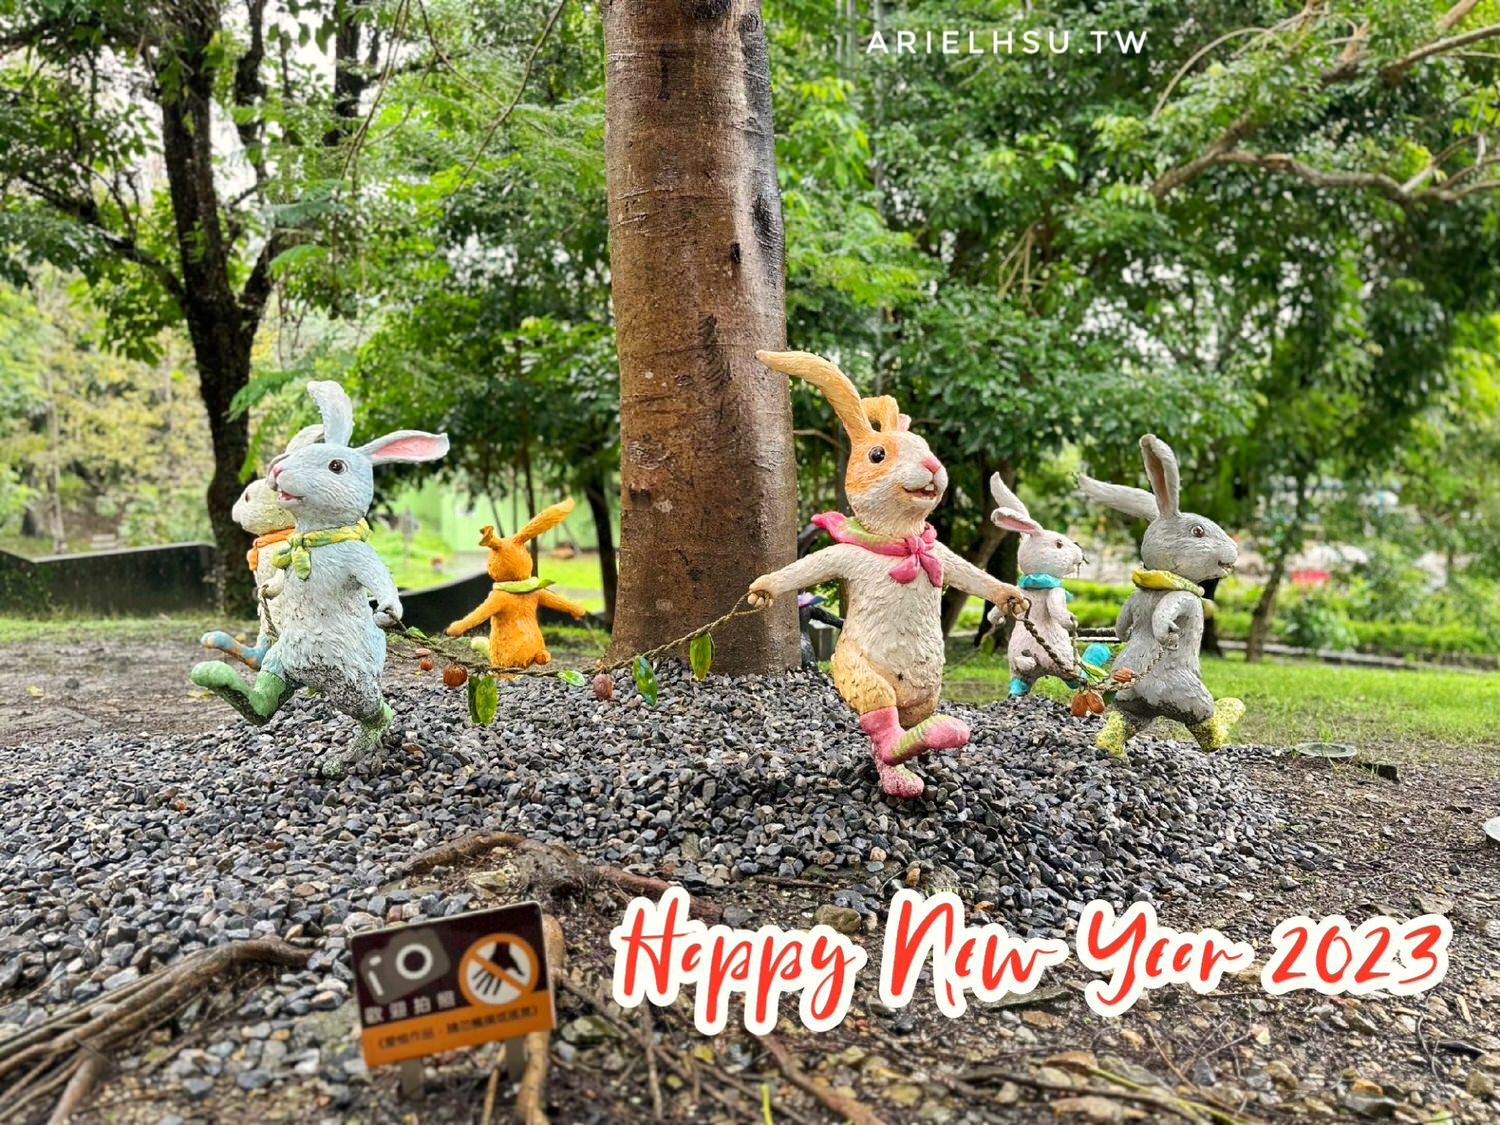 【新年祝賀語錄】2023兔年吉祥話 祝福您錢兔似錦 兔年行大運 新年快樂 Happy new year of Rabbit